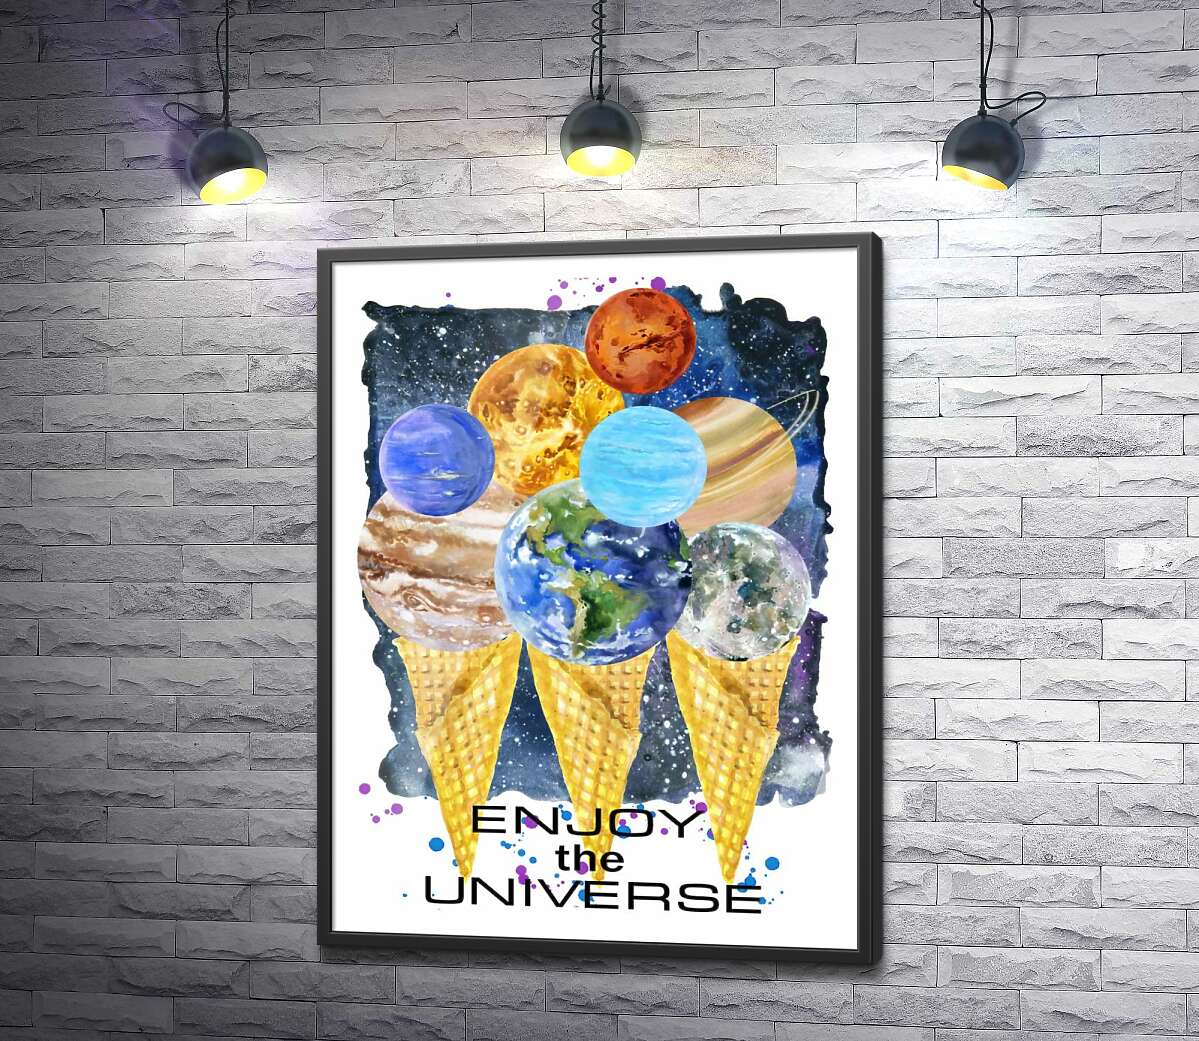 постер Планеты Солнечной системы собрались на рожках мороженого с надписью "enjoy the universe"